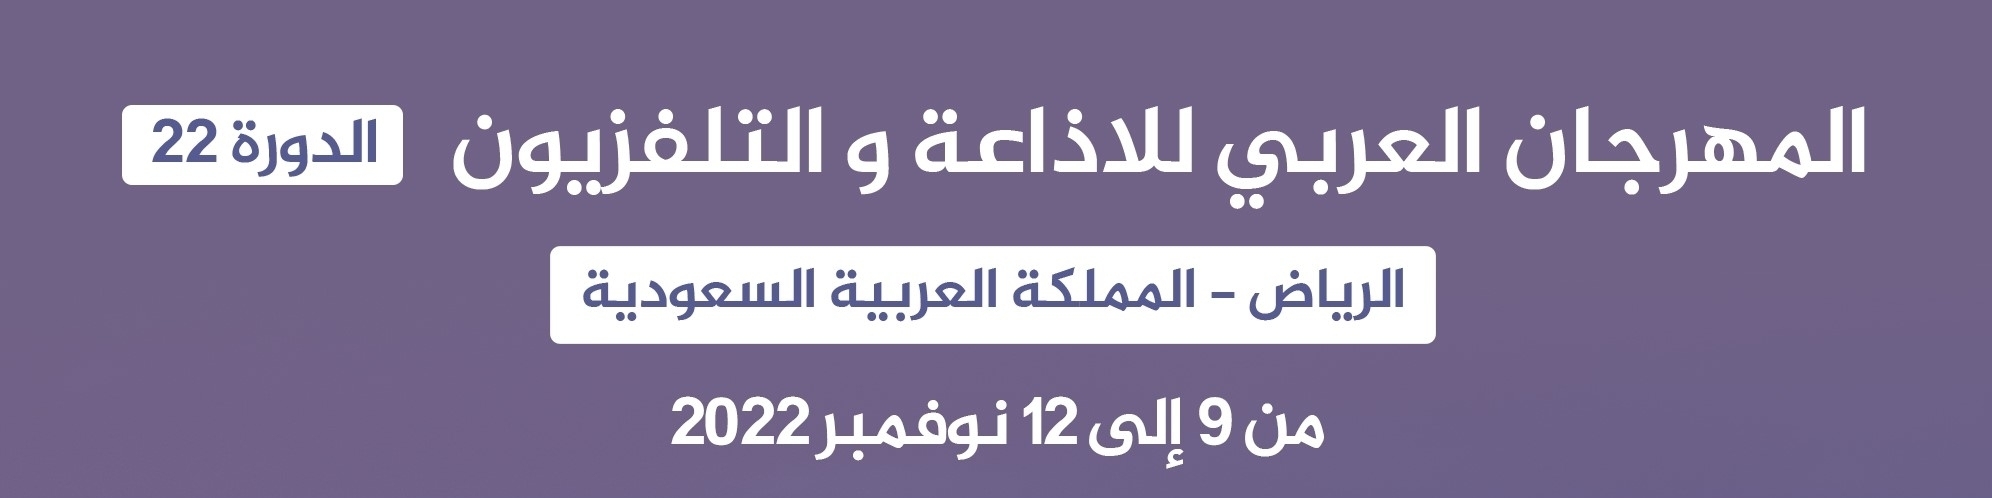  الدورة 22 للمهرجان العربي للاذاعة والتلفزيون على الأبواب :  دورة استثنائية بكل المقاييس